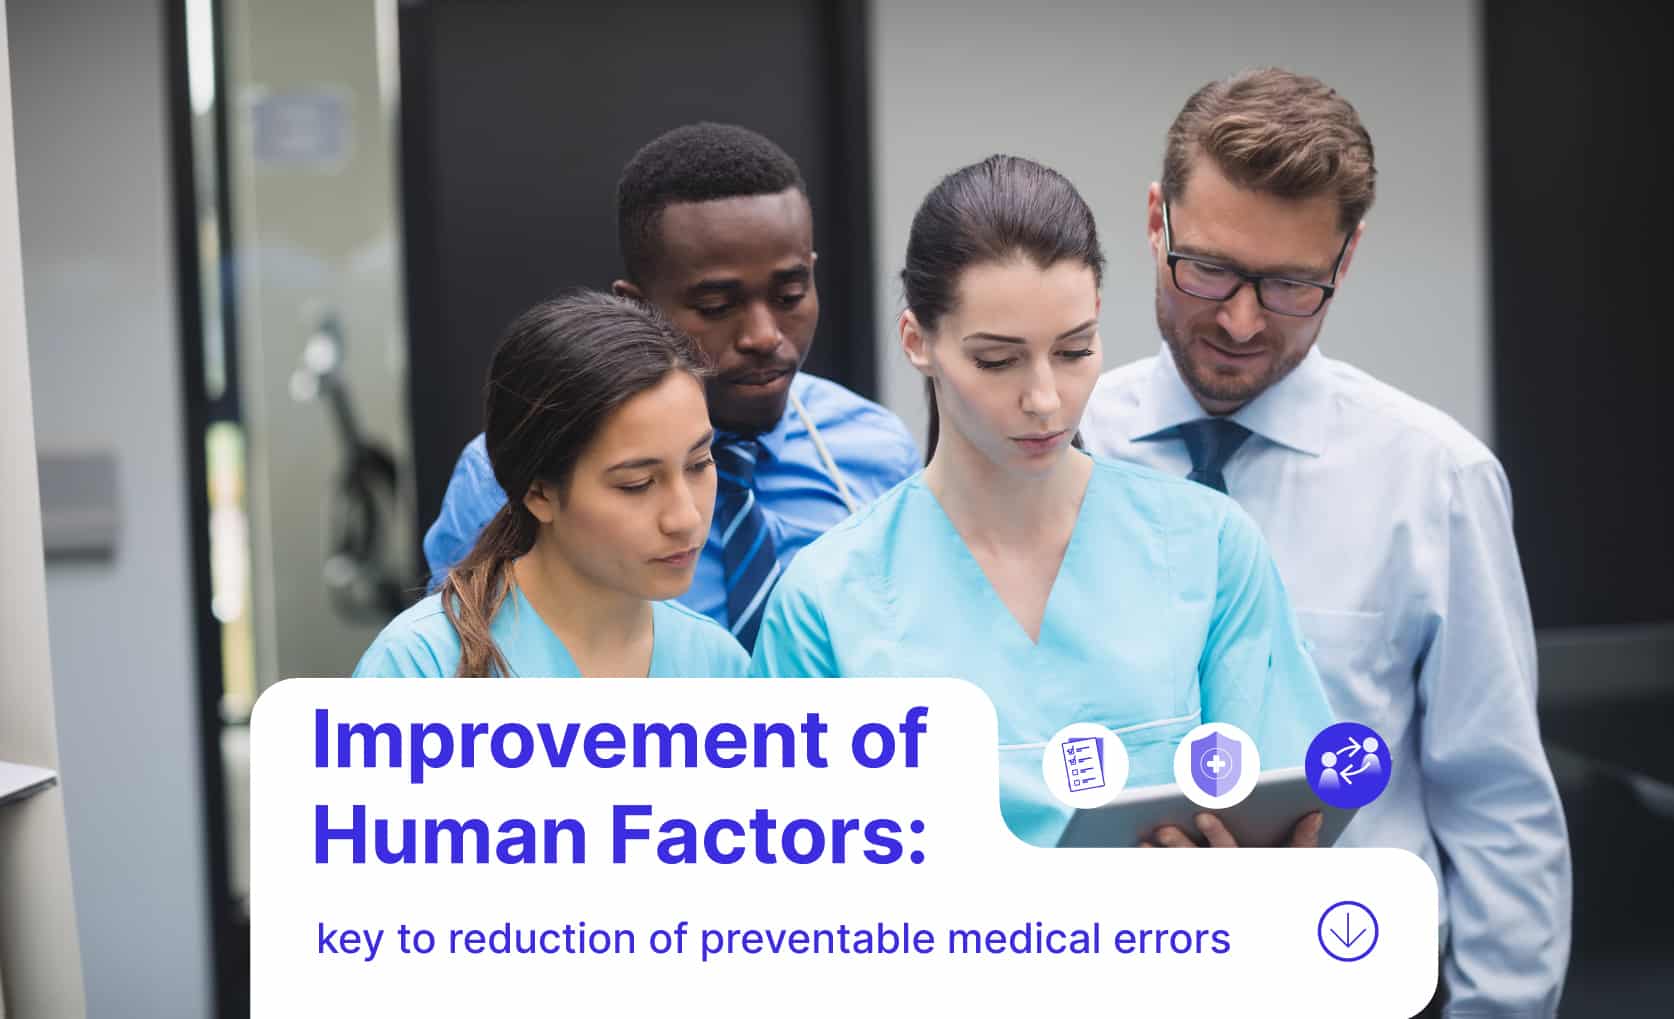 Human factors in Healthcare